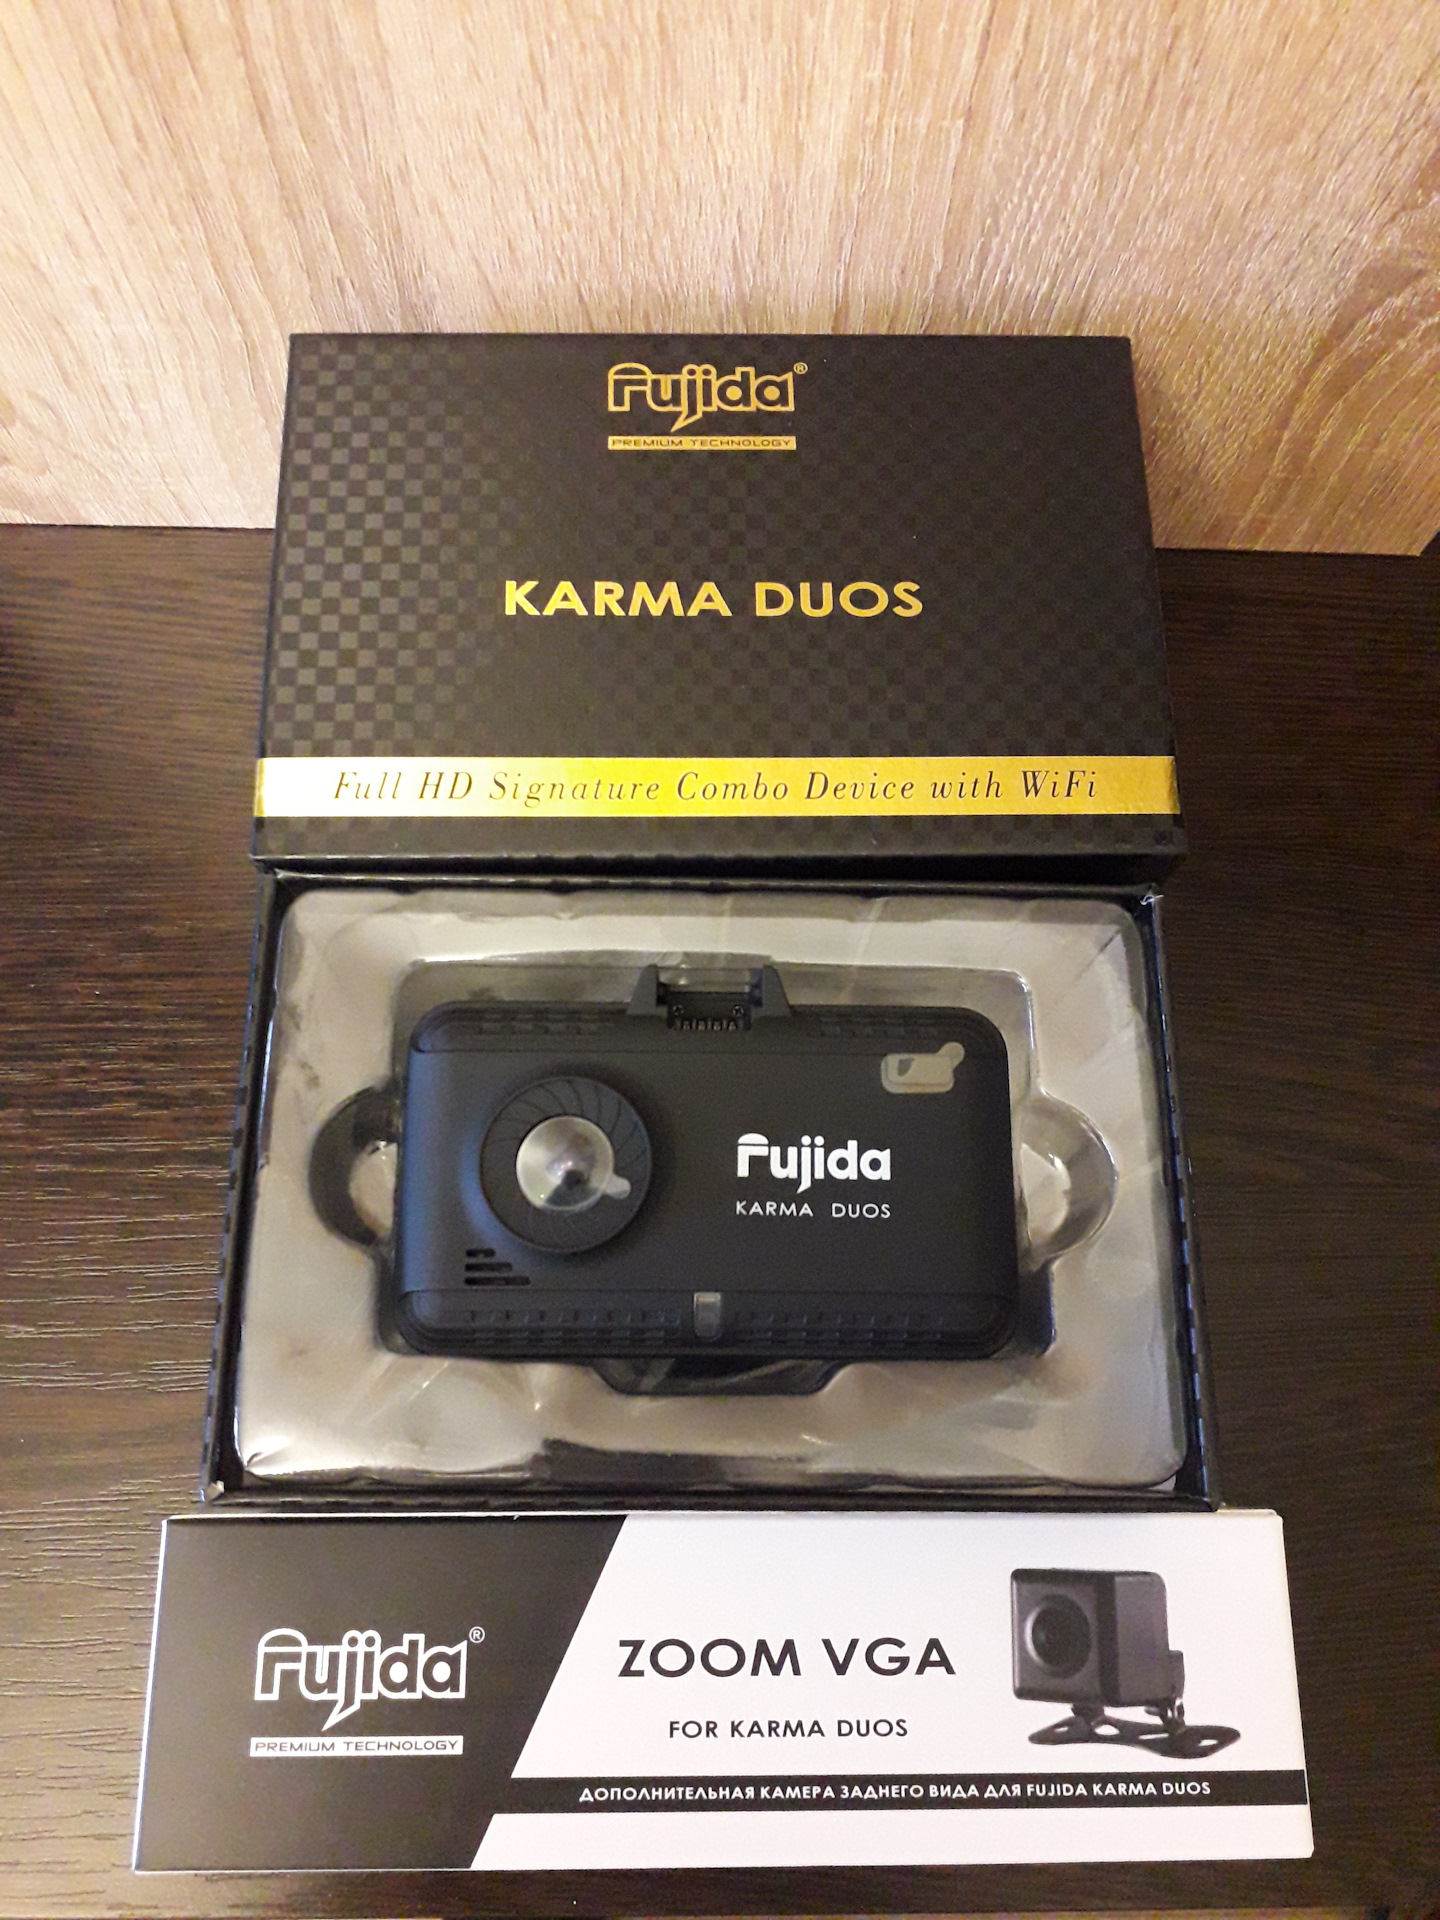 Регистратор фуджида. Регистратор Fujida Karma Duos. Дополнительная камера для Fujida Karma Duos s.